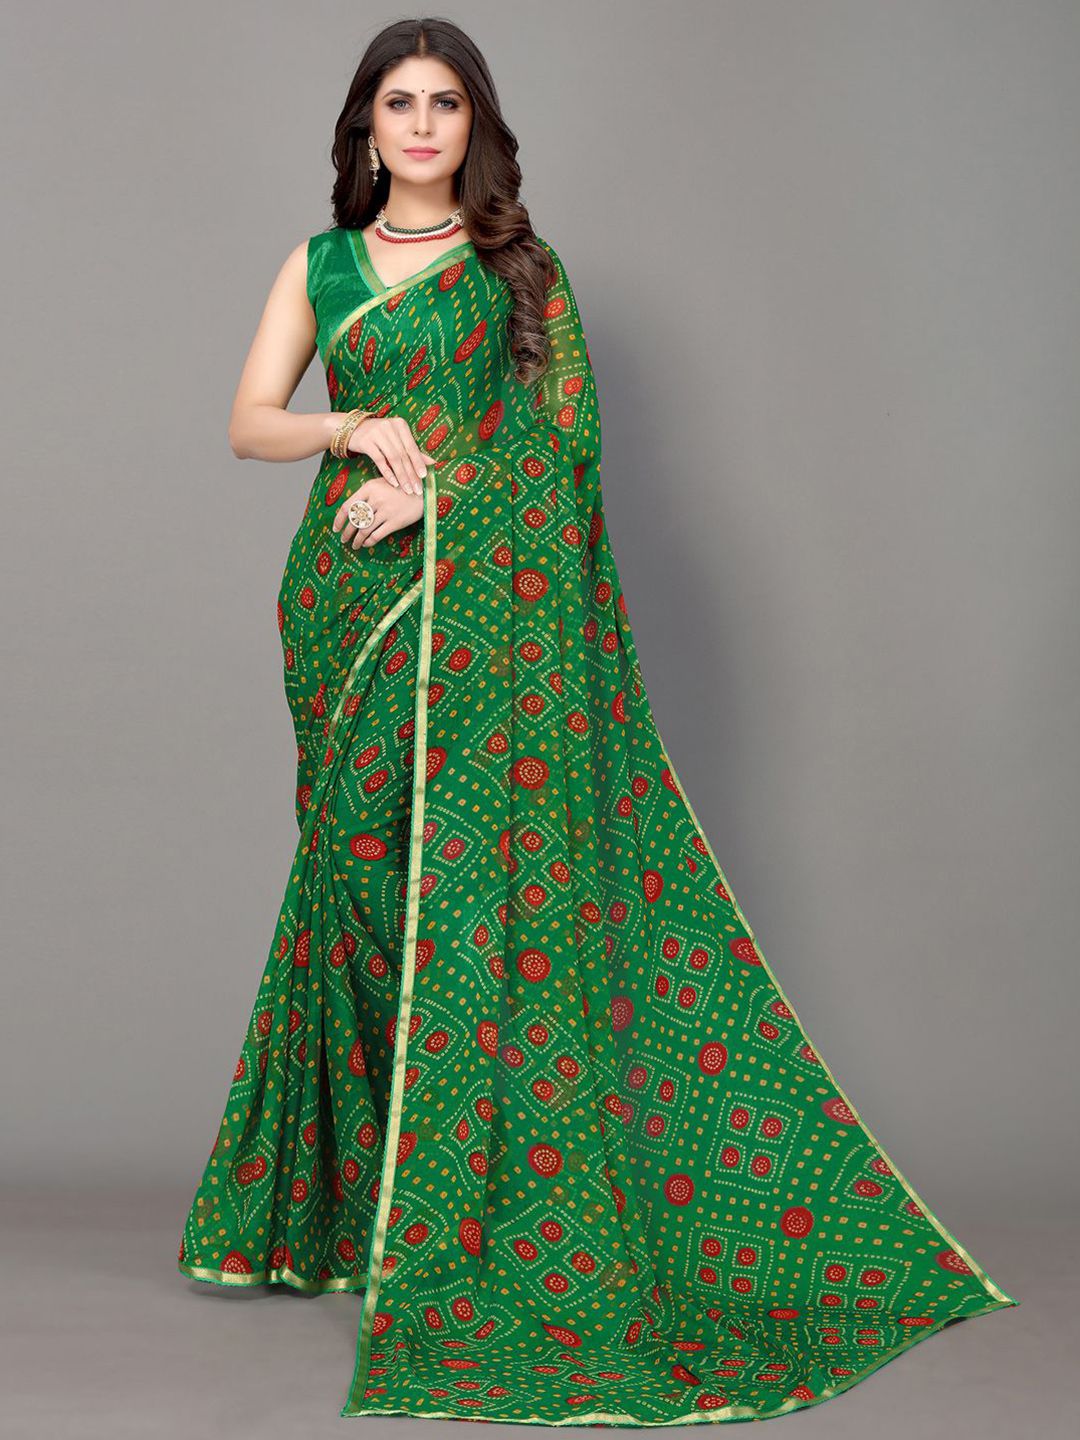 KALINI Green & Yellow Bandhani Zari Bandhani Saree Price in India